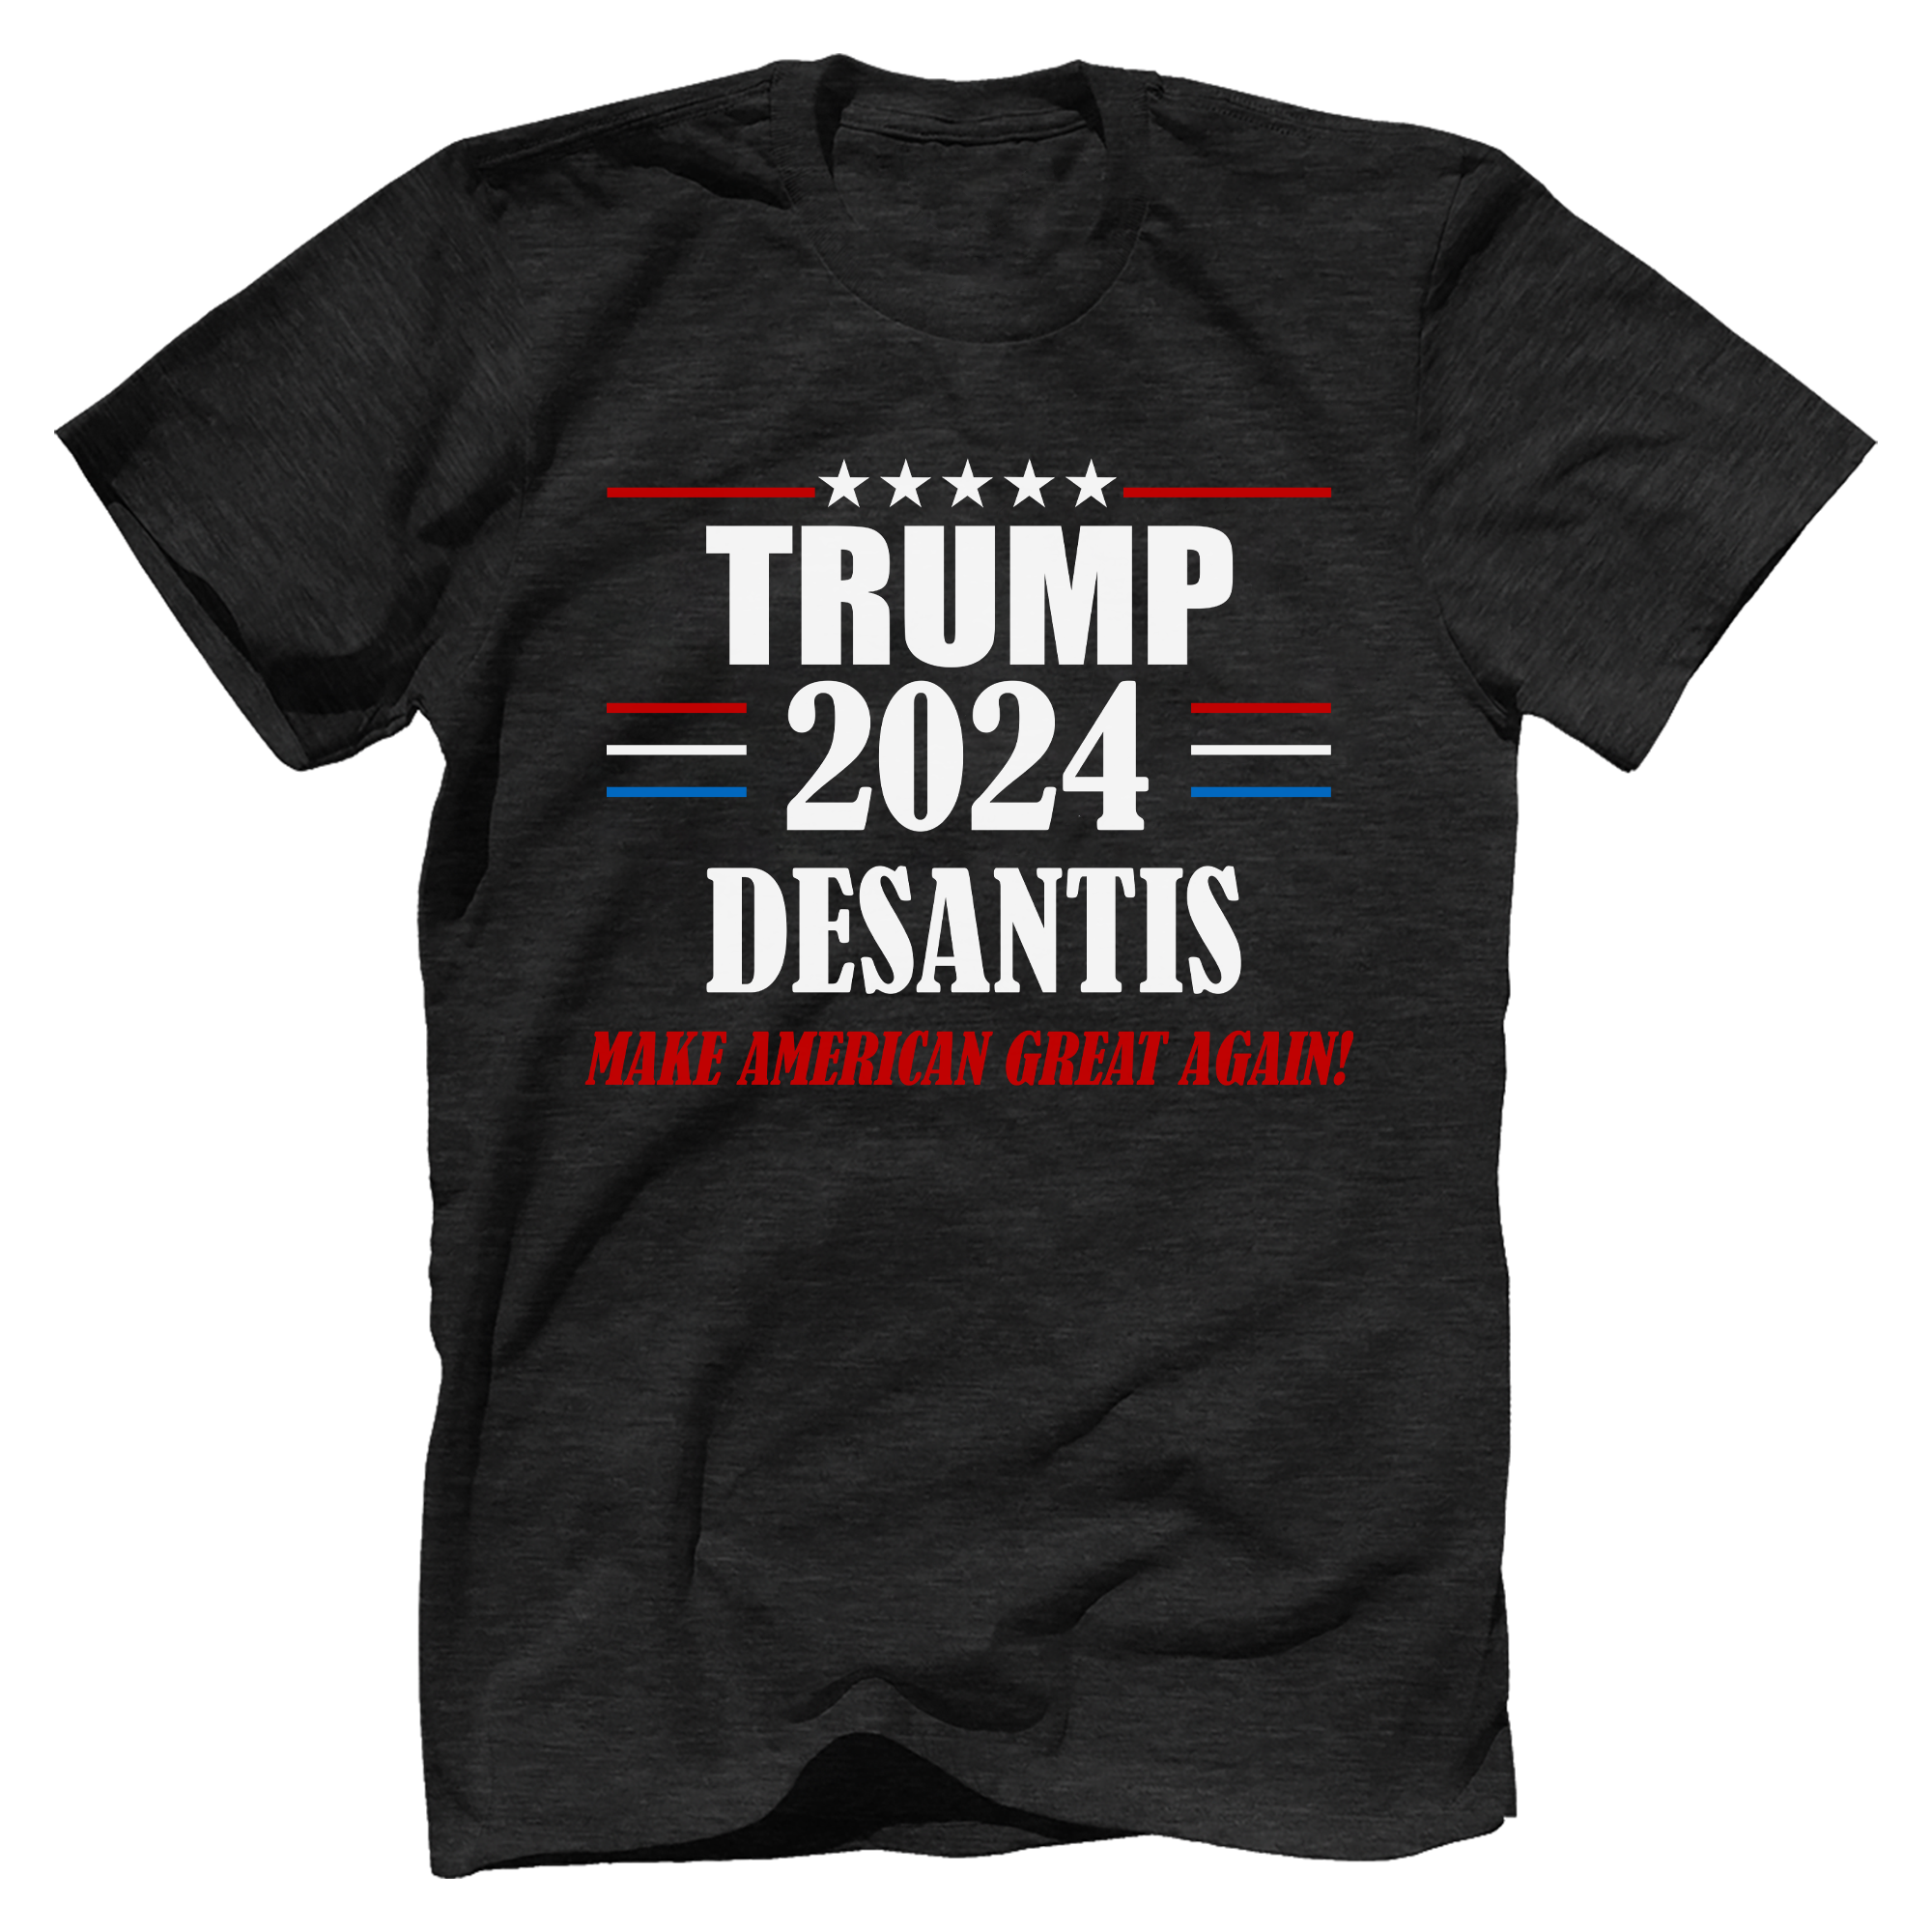 Trump Make American Great Again T-Shirt - GB30